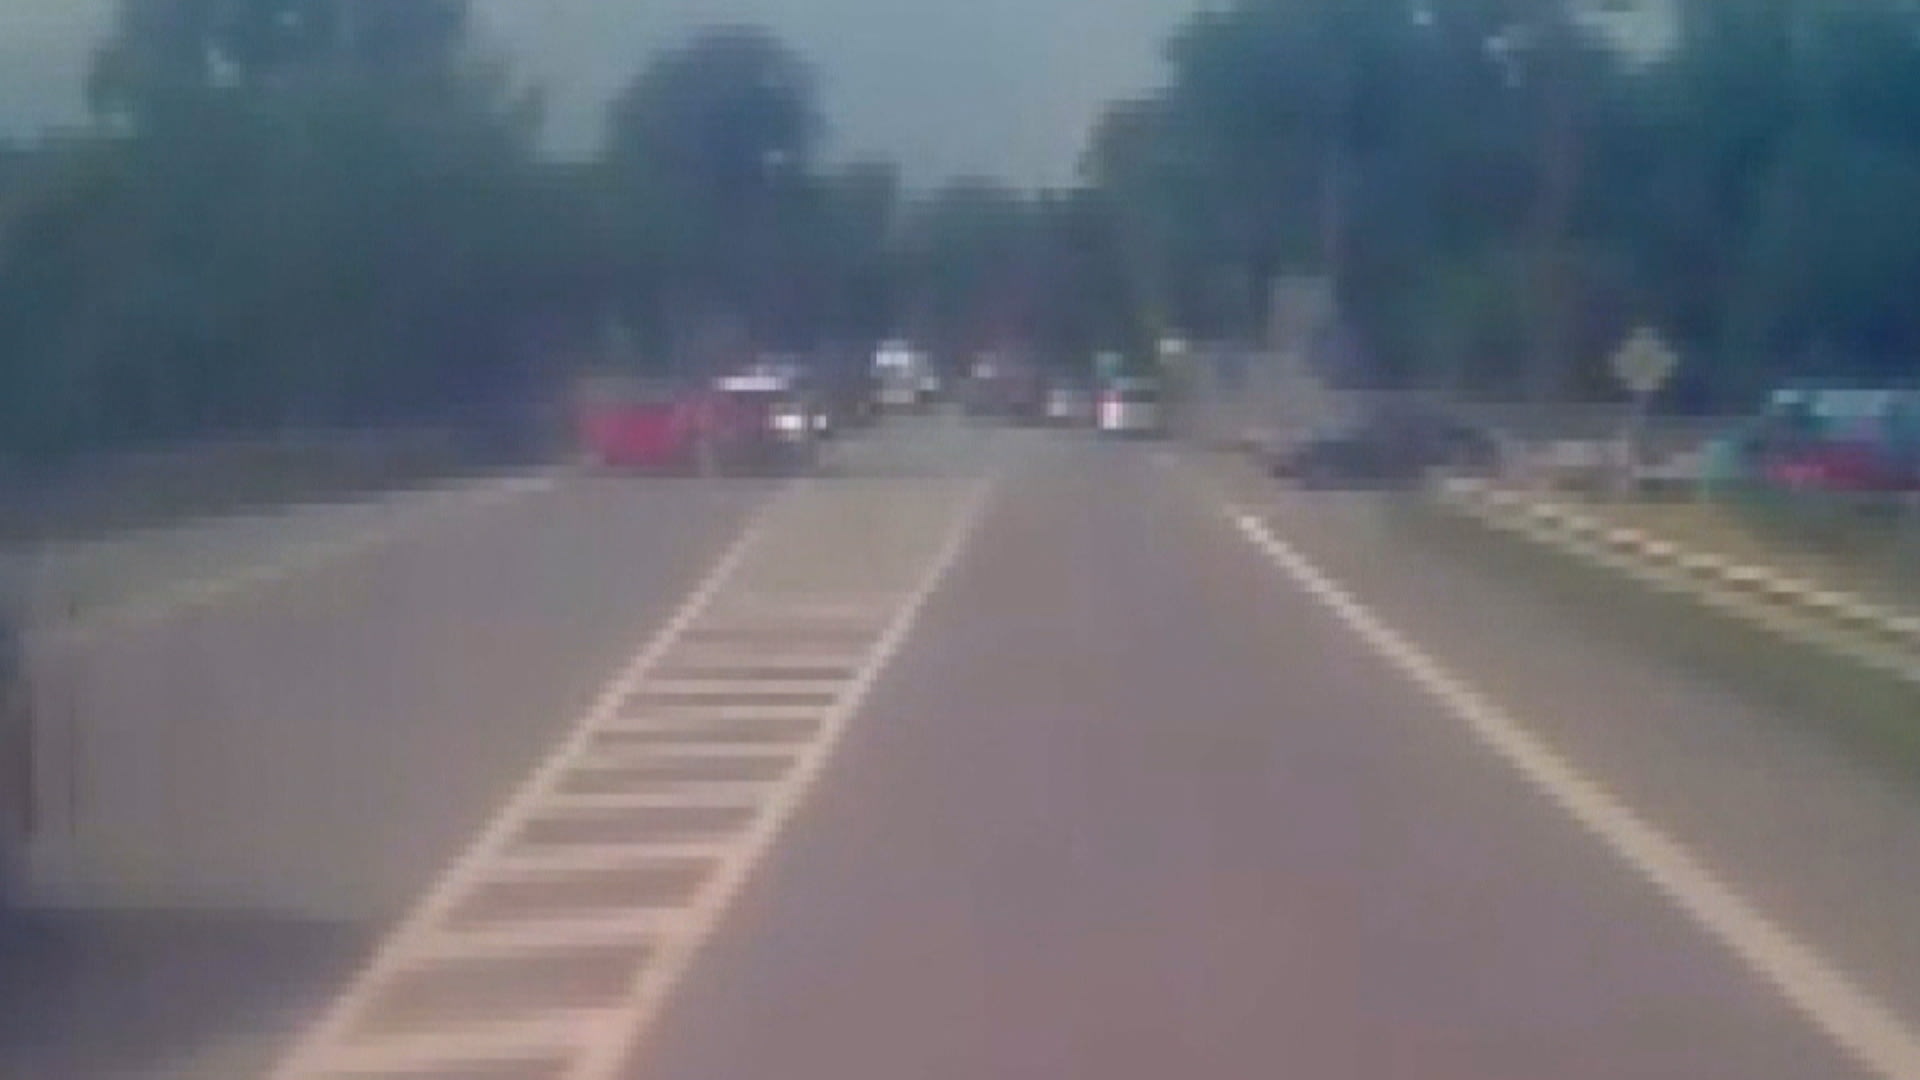 Na křižovatce ve Slavkově smetl auto s dvěma dětmi a ujel. Po řidiči pátrá policie.